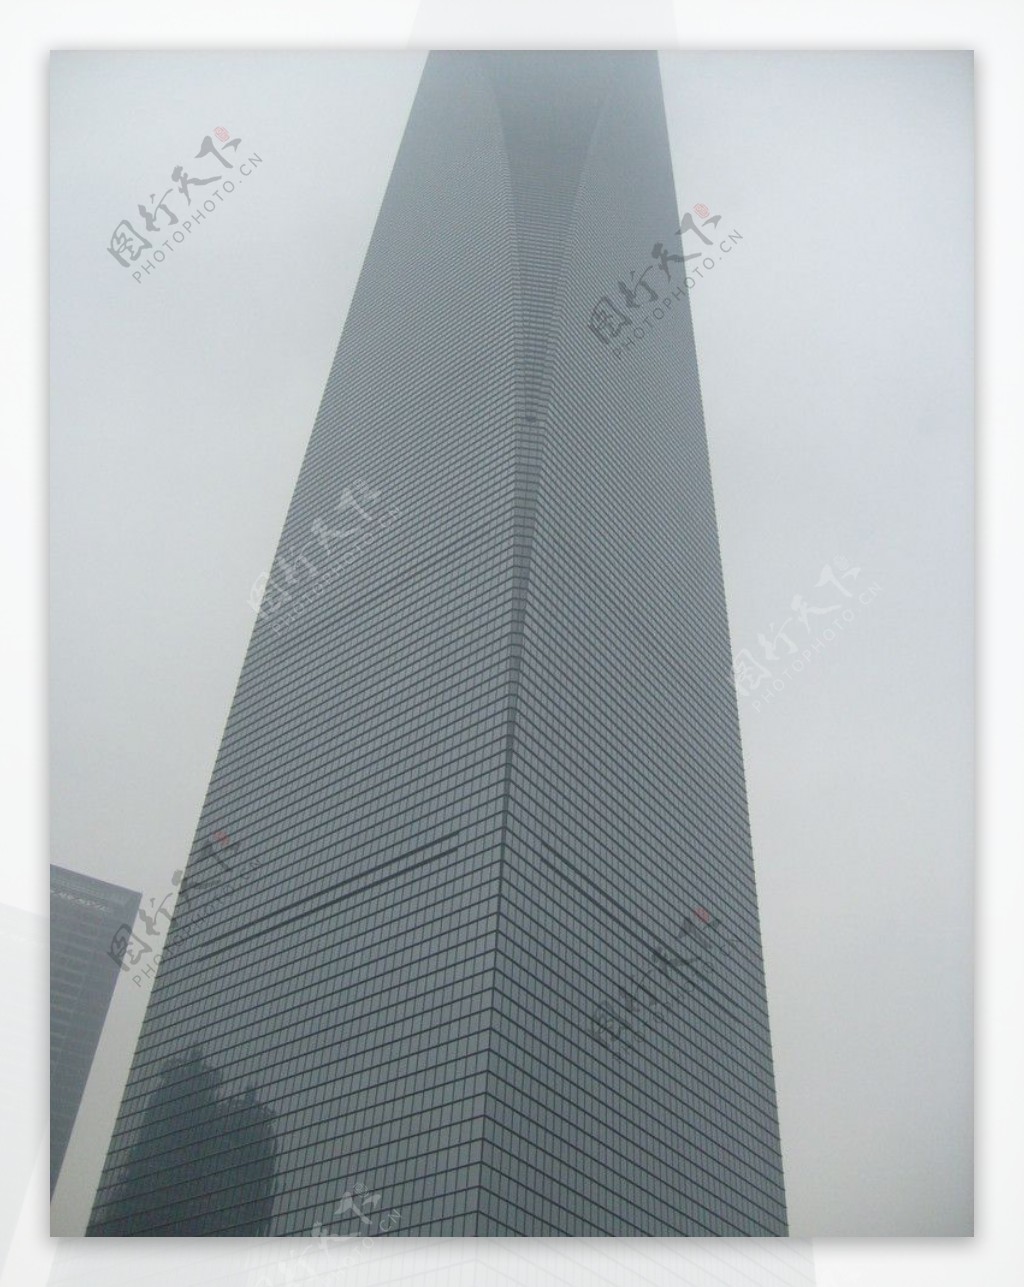 上海环球金融中心图片